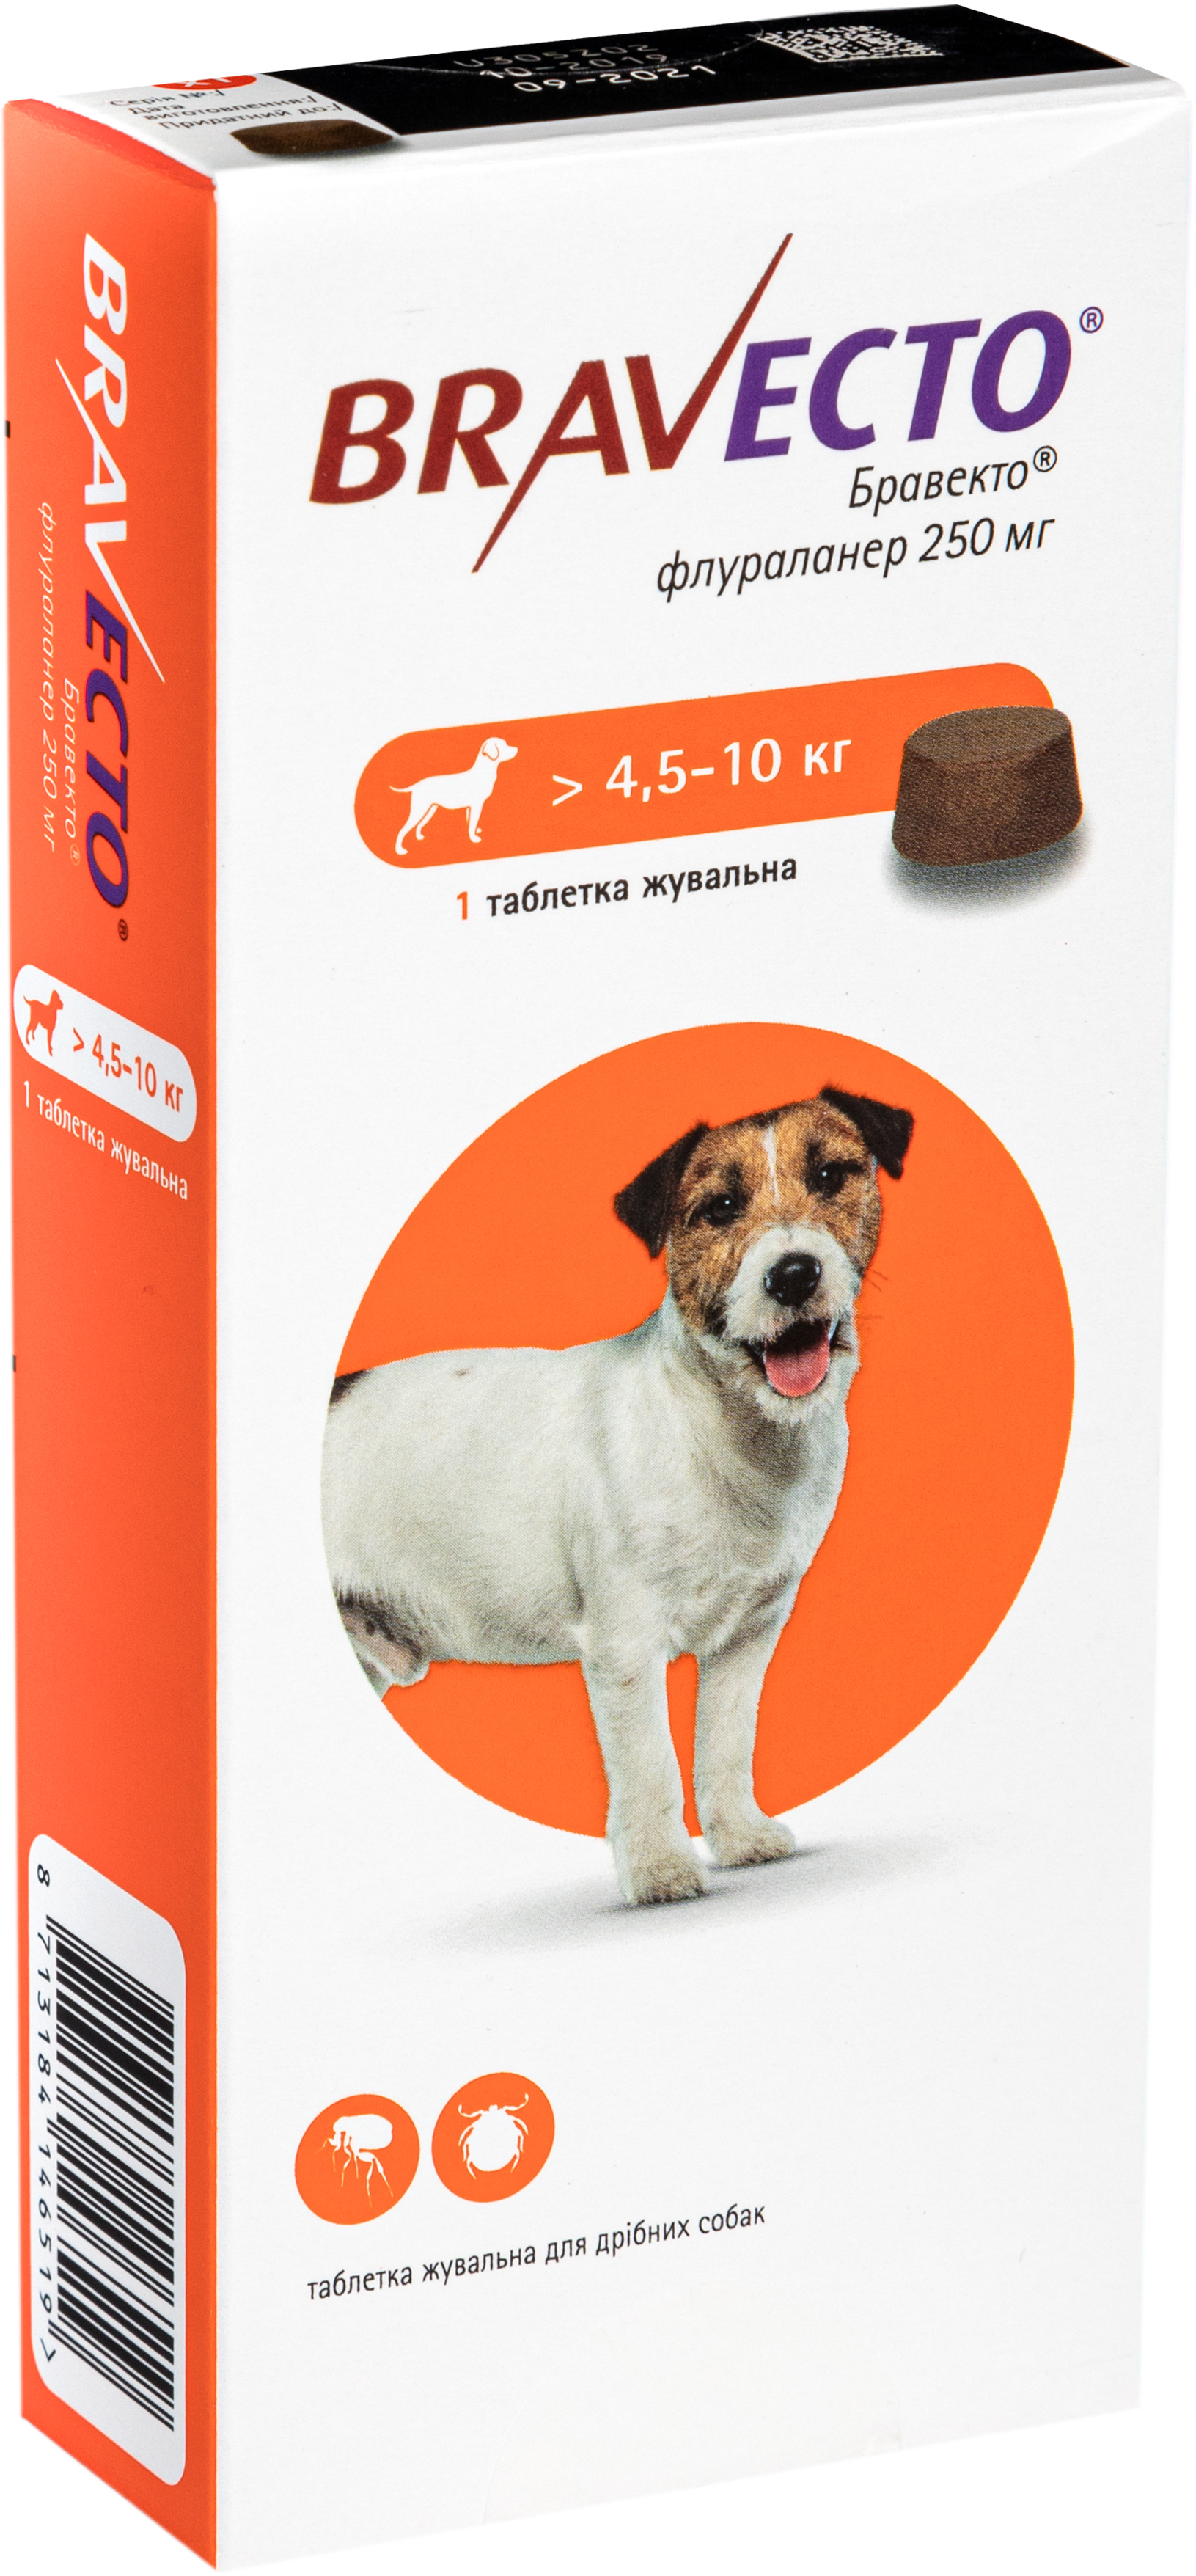 Жувальна пігулка Bravecto від бліх і кліщів для собак з вагою 4,5-10 кг - фото 2